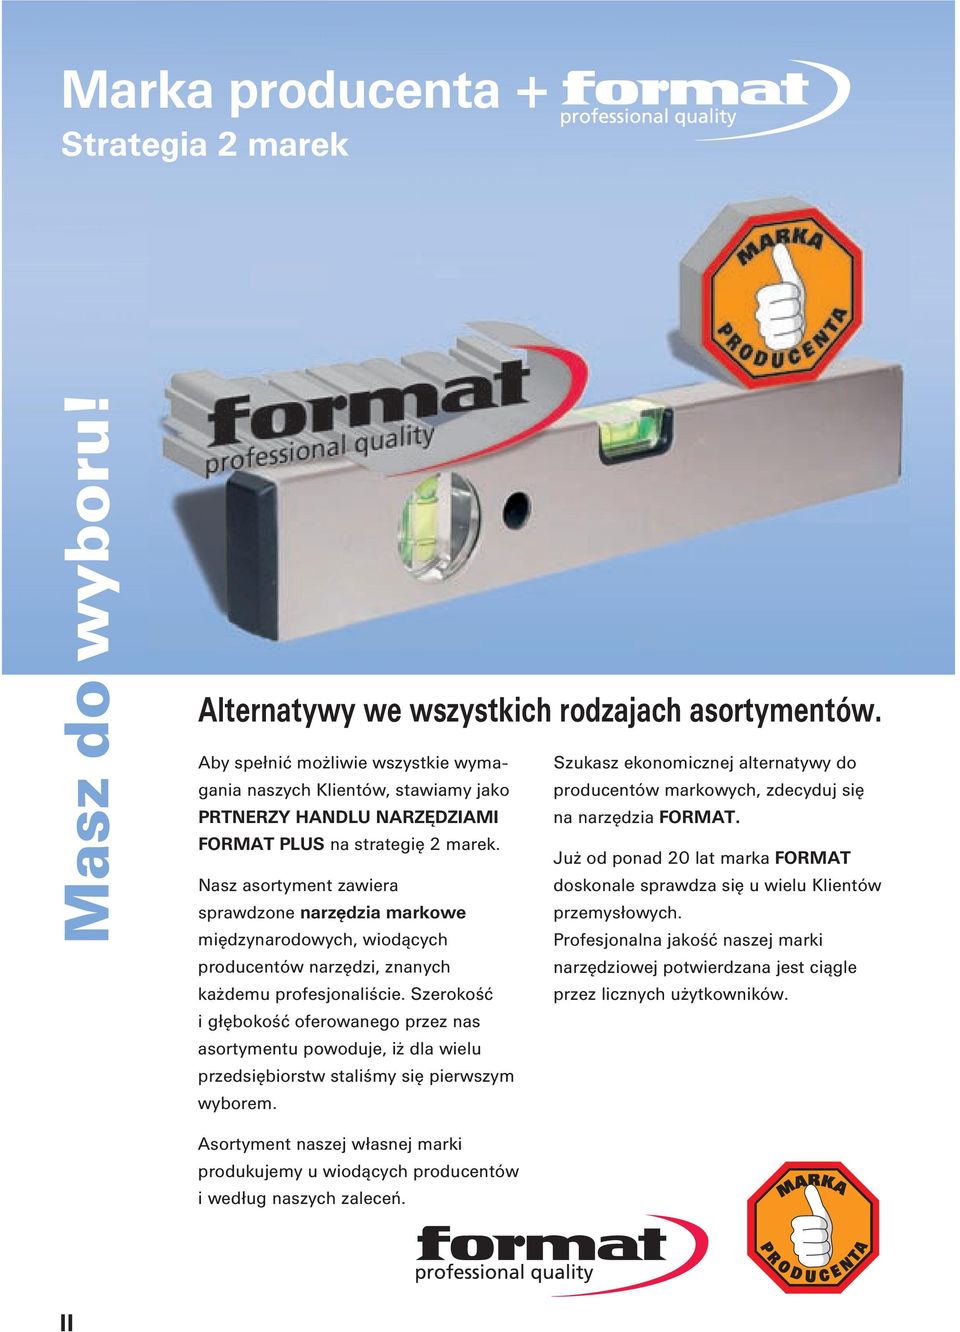 FORMAT PLUS na strategię 2 marek. Już od ponad 20 lat marka FORMAT Nasz asortyment zawiera doskonale sprawdza się u wielu Klientów sprawdzone narzędzia markowe przemysłowych.